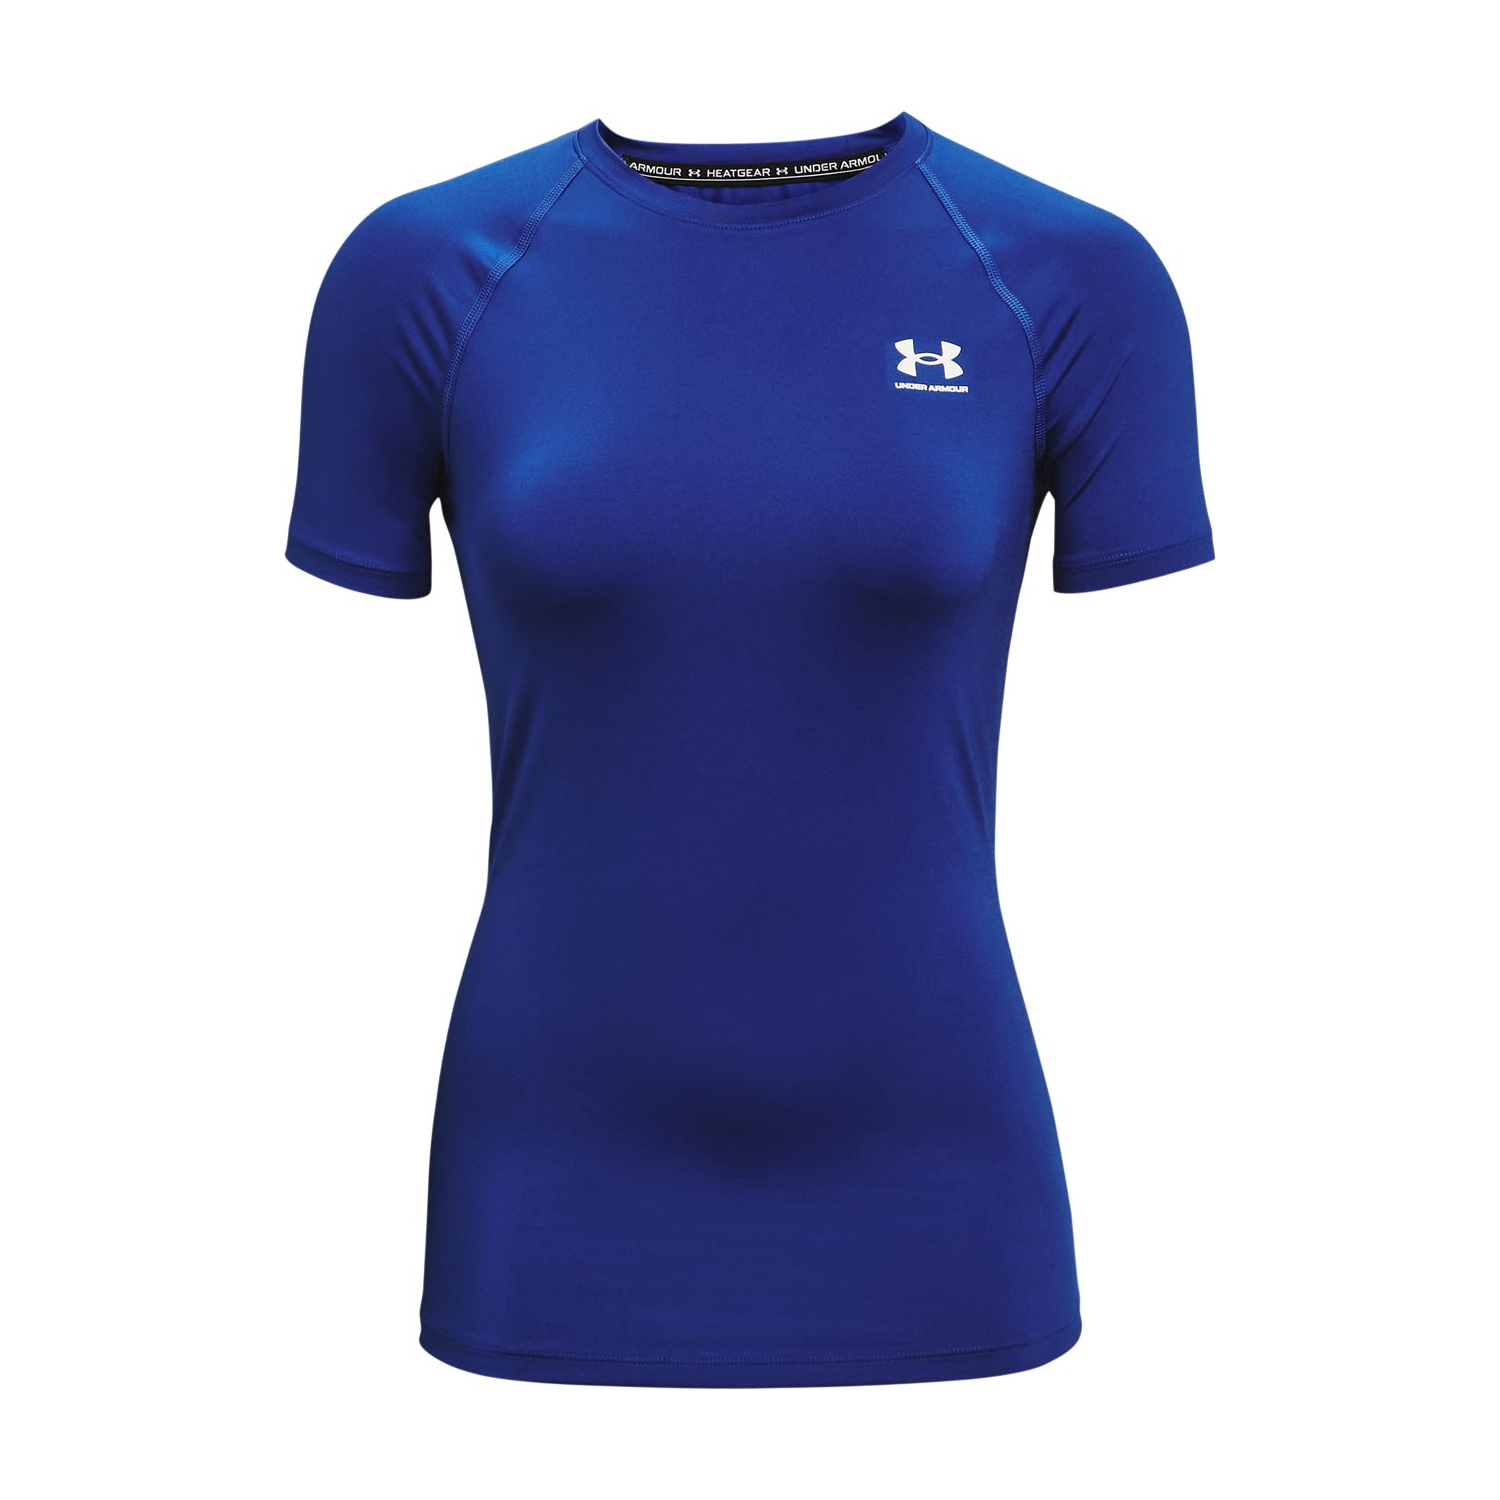 Women's Compression Shirt - (Gym wear) Pro-run Shirt - HARAKA